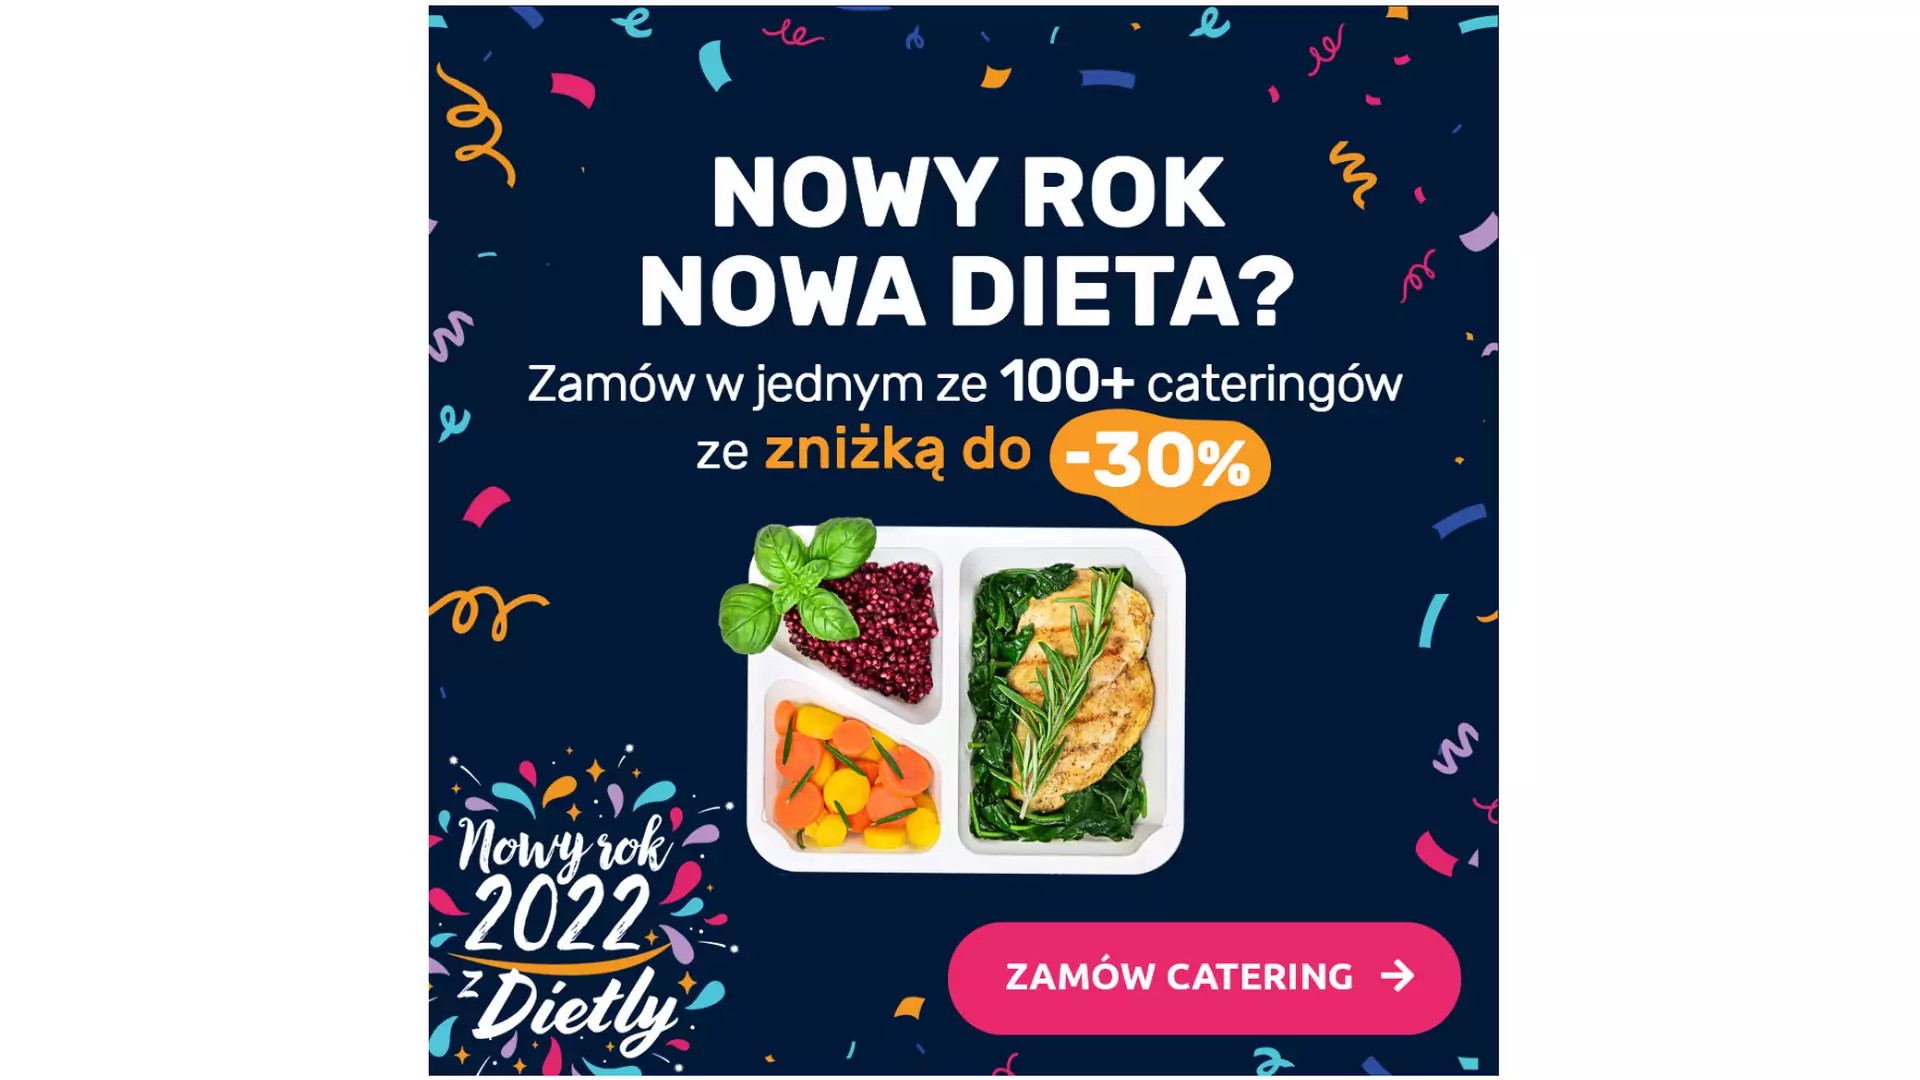 Noworoczne promocje na catering dietetyczny z Dietly.pl – koniecznie sprawdź